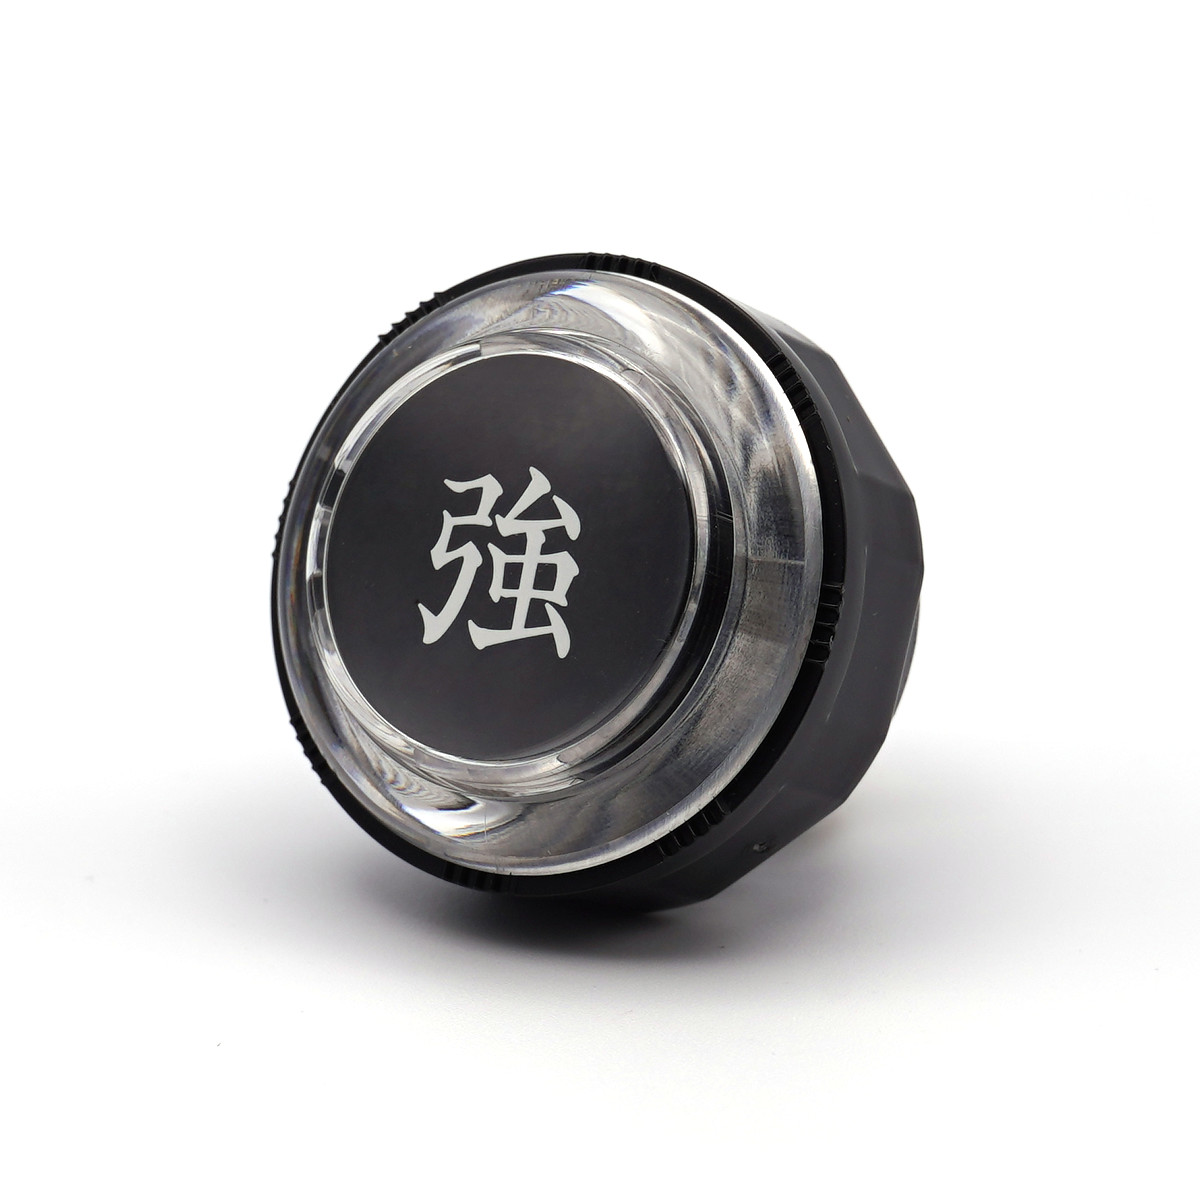 【セイミツ工業】 押しボタン 30Φ ネジ式 クリア 漢字表示入り 【PS-14-KN】